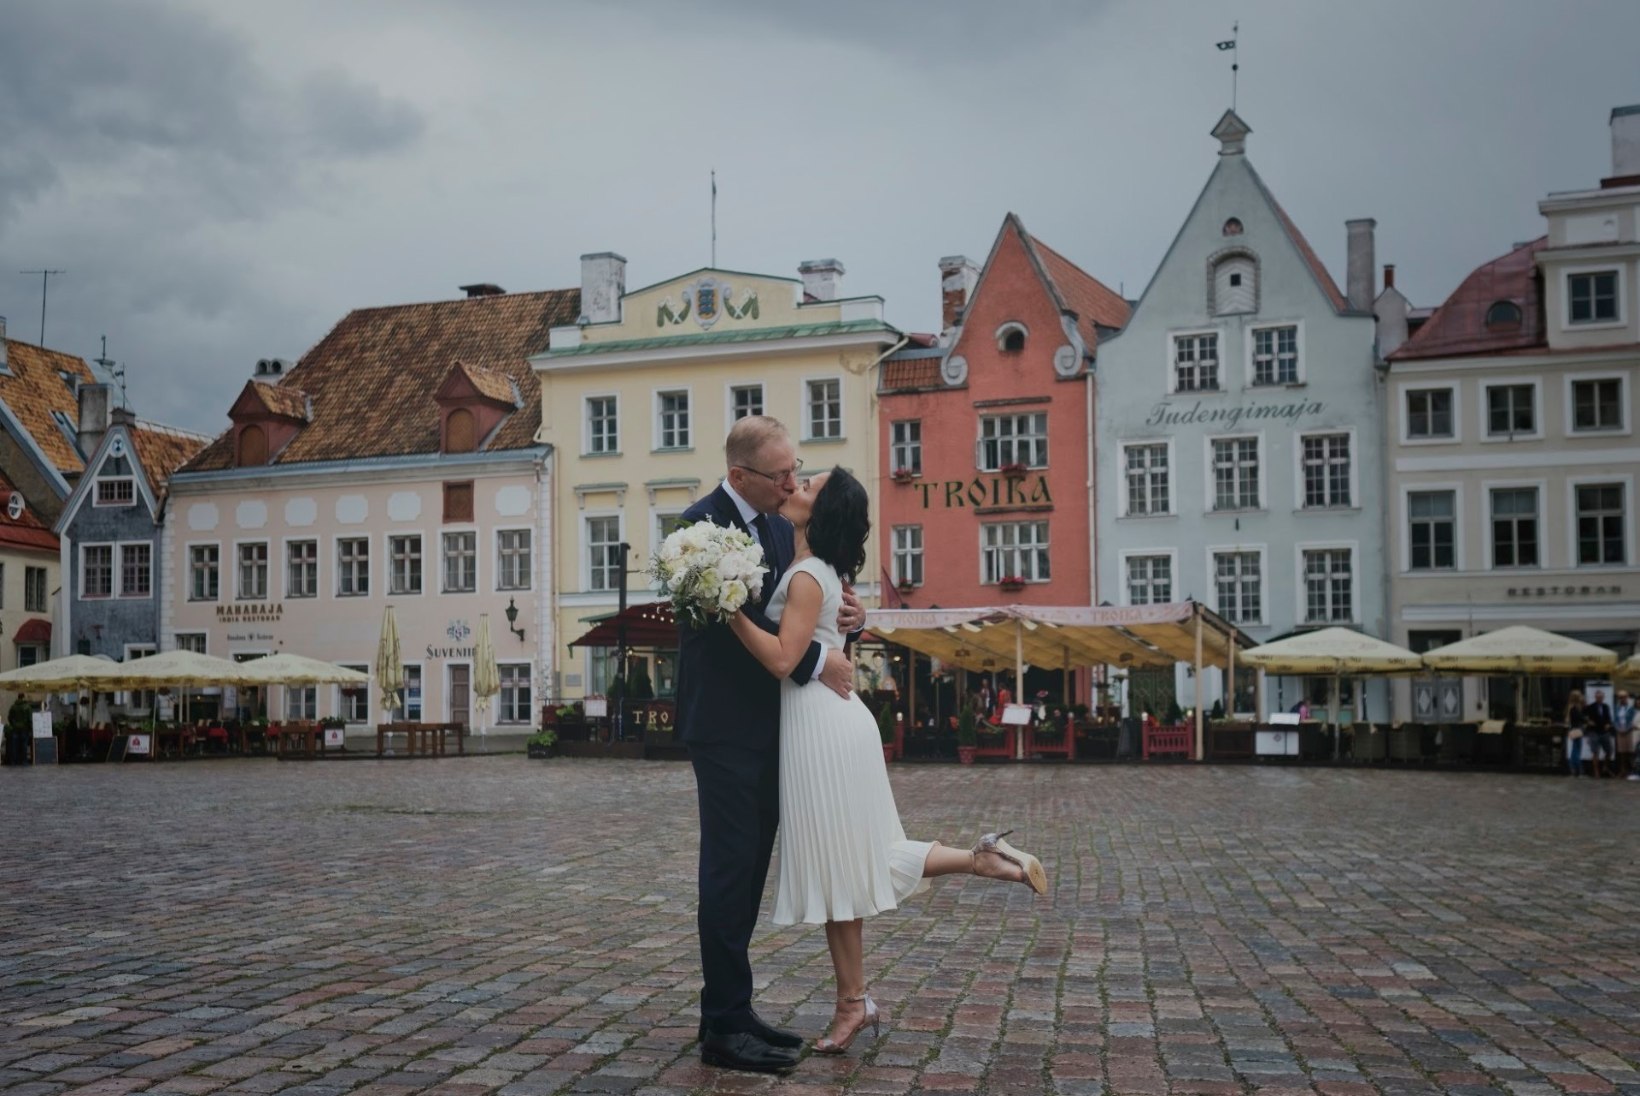 FOTOD | Marko Mihkelson ja Tuuli Semevsky abiellusid: üllatuspidu rabas meid täielikult jalust